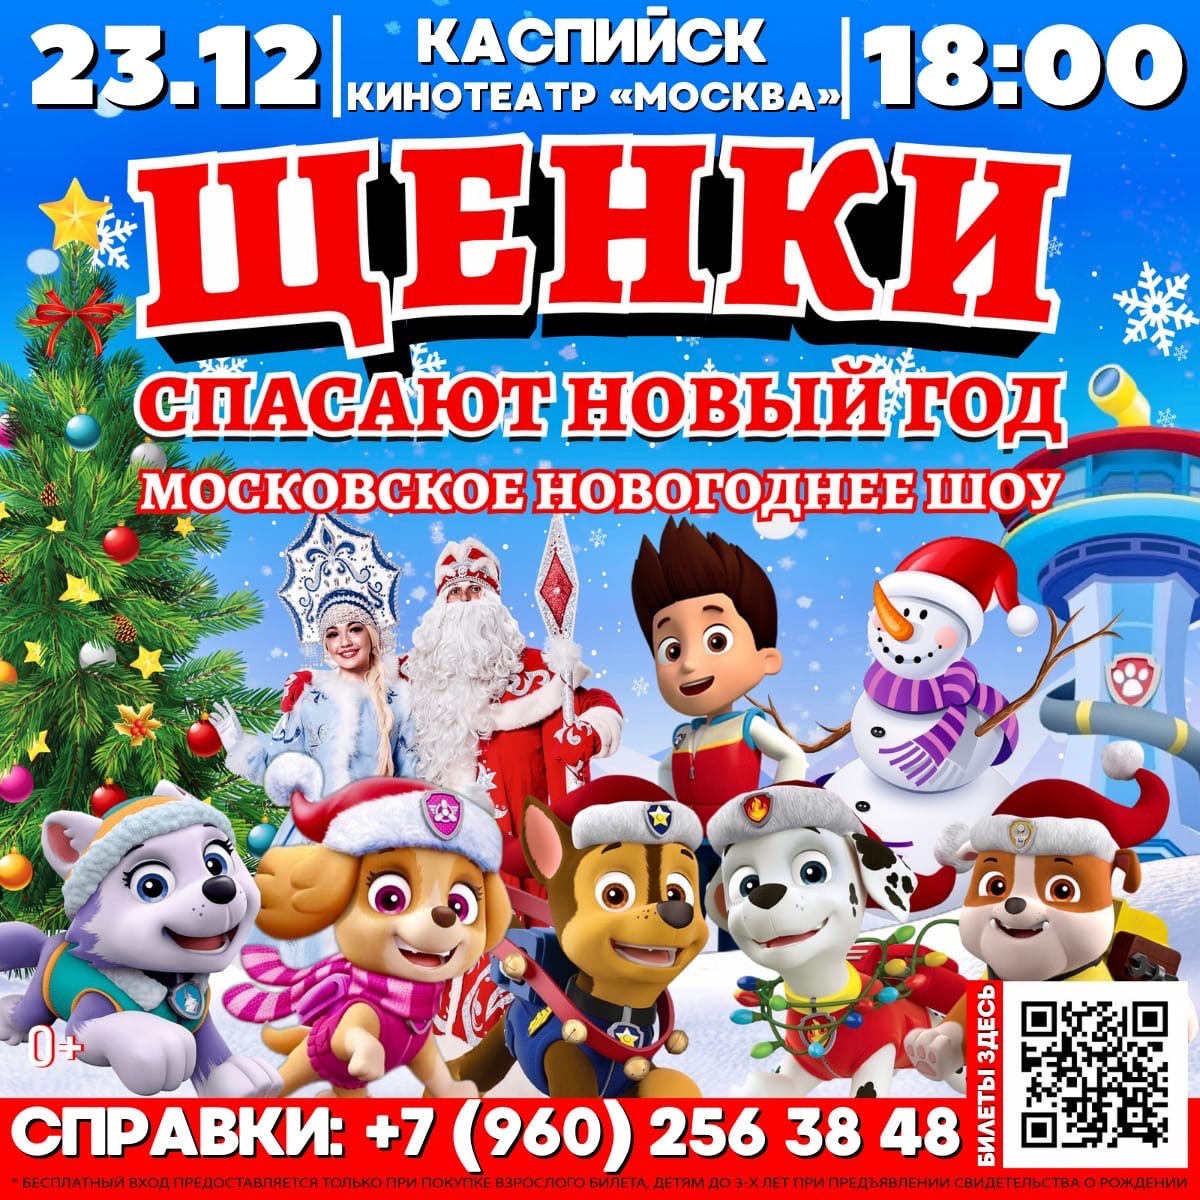 КАСПИЙСК, встречай! Грандиозное новогоднее шоу 23 декабря в 18:00 / КИНОТЕАТР «МОСКВА»